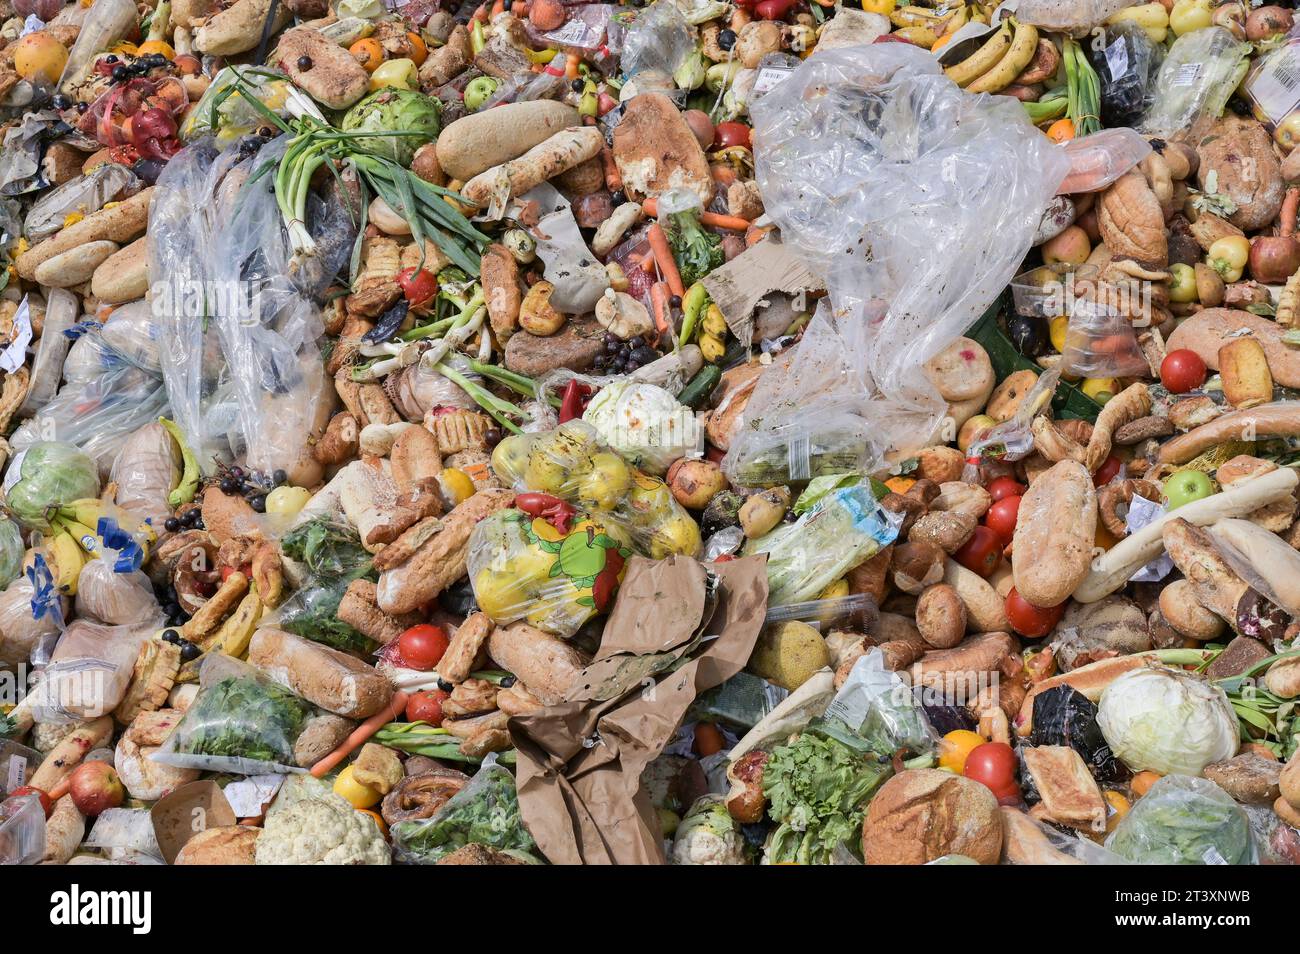 SERBIA, rifiuti alimentari da supermercato / SERBIEN, Lebensmittel Abfälle von Supermärkten Foto Stock